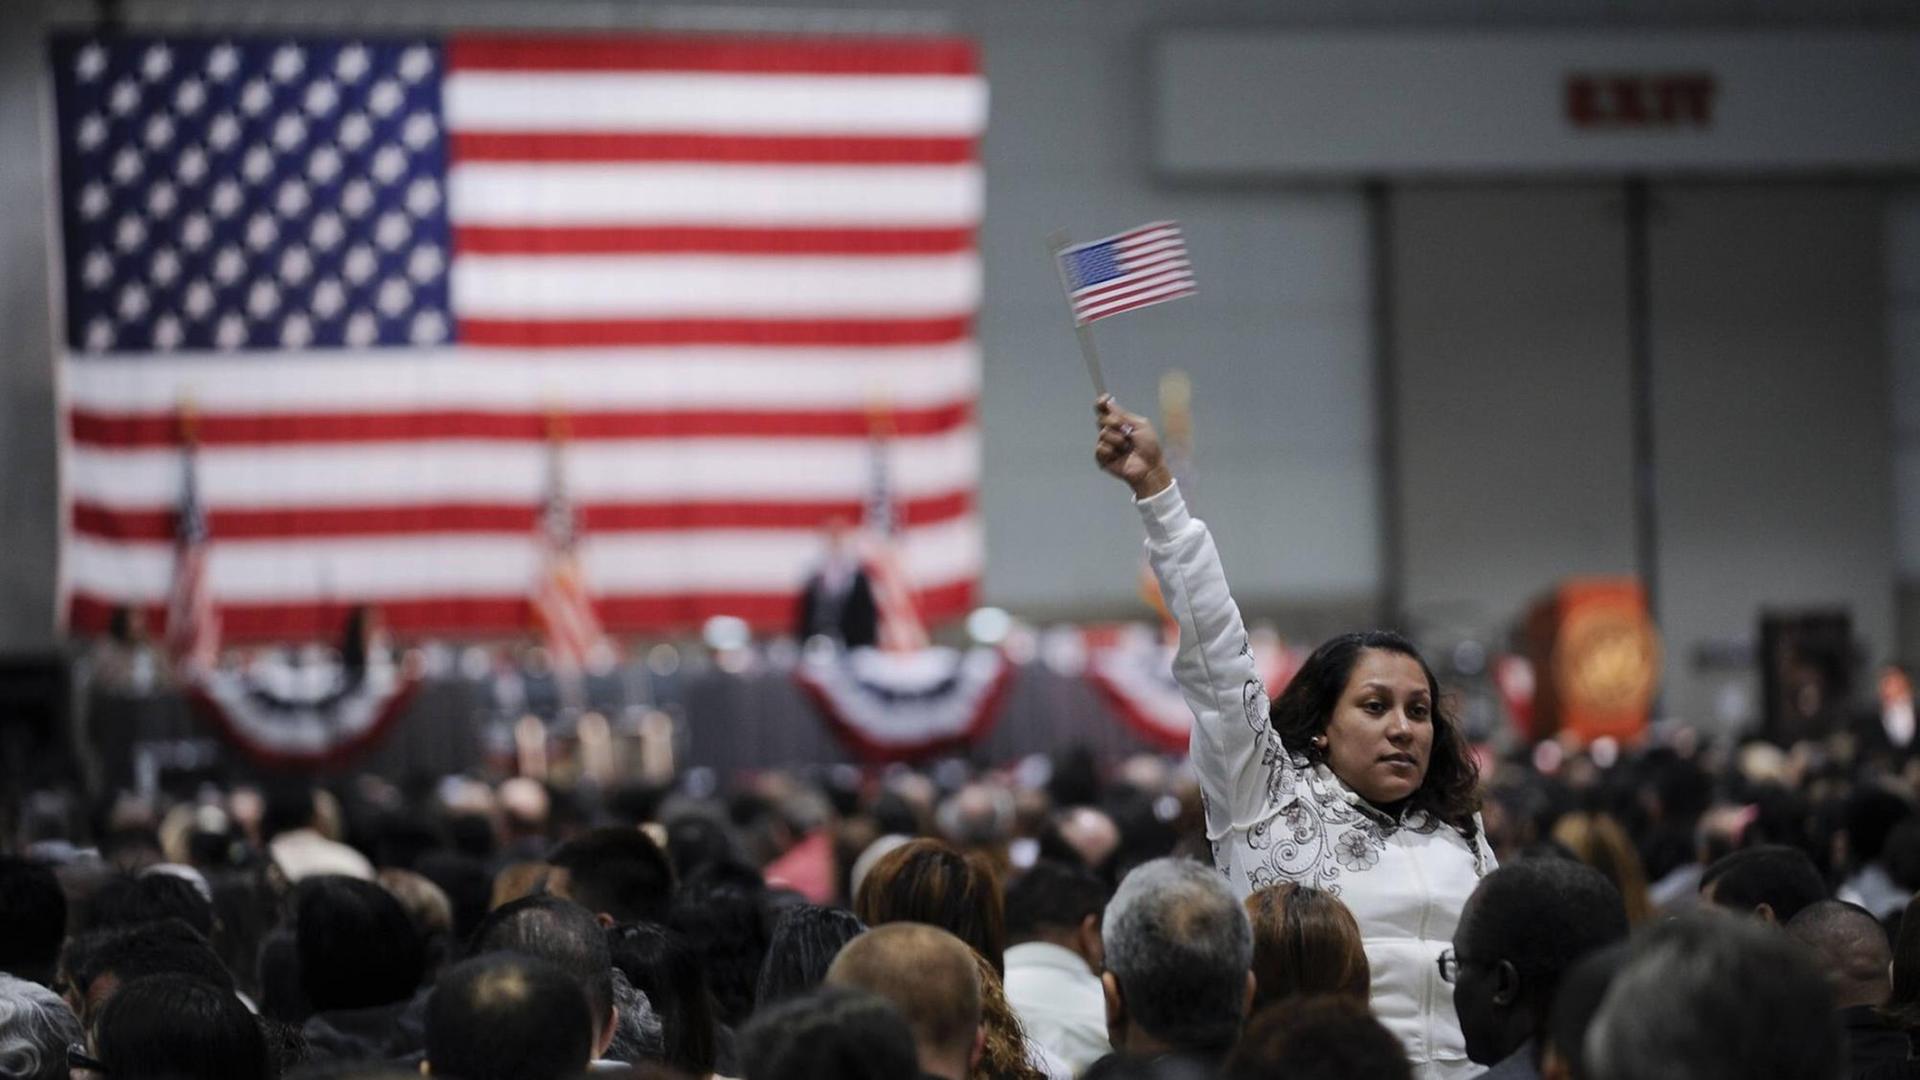 Einwanderer stehen bei einer Einbürgerungszeremonie im Oktober 2010 in Los Angeles vor einer US-Flagge. Der Arm einer Flau ragt aus der Menge. Sie hält eine kleine US-Fahne in der Hand.